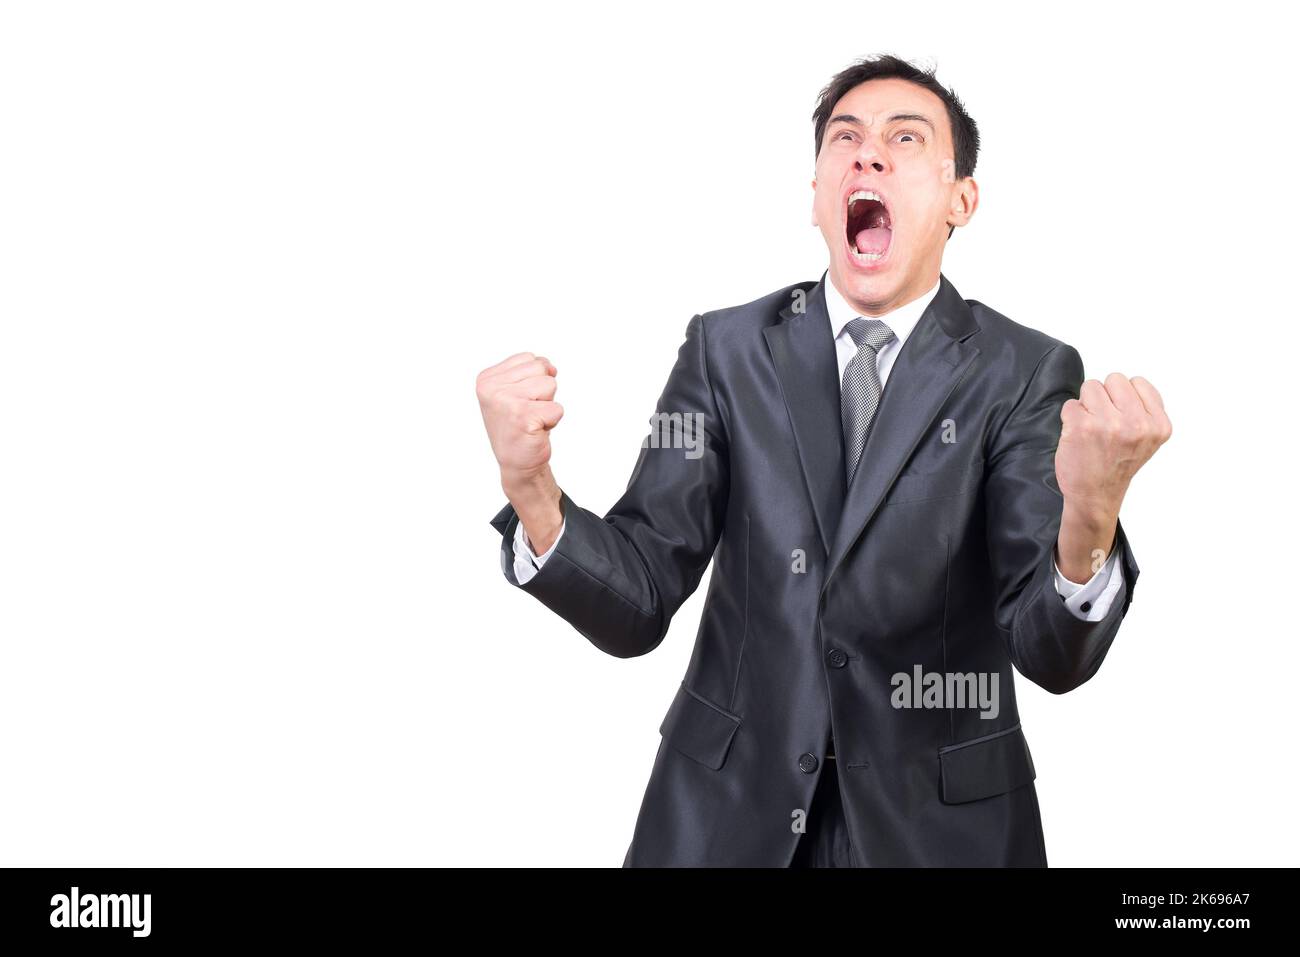 Hombre histérico en traje formal gritando en el estudio Foto de stock